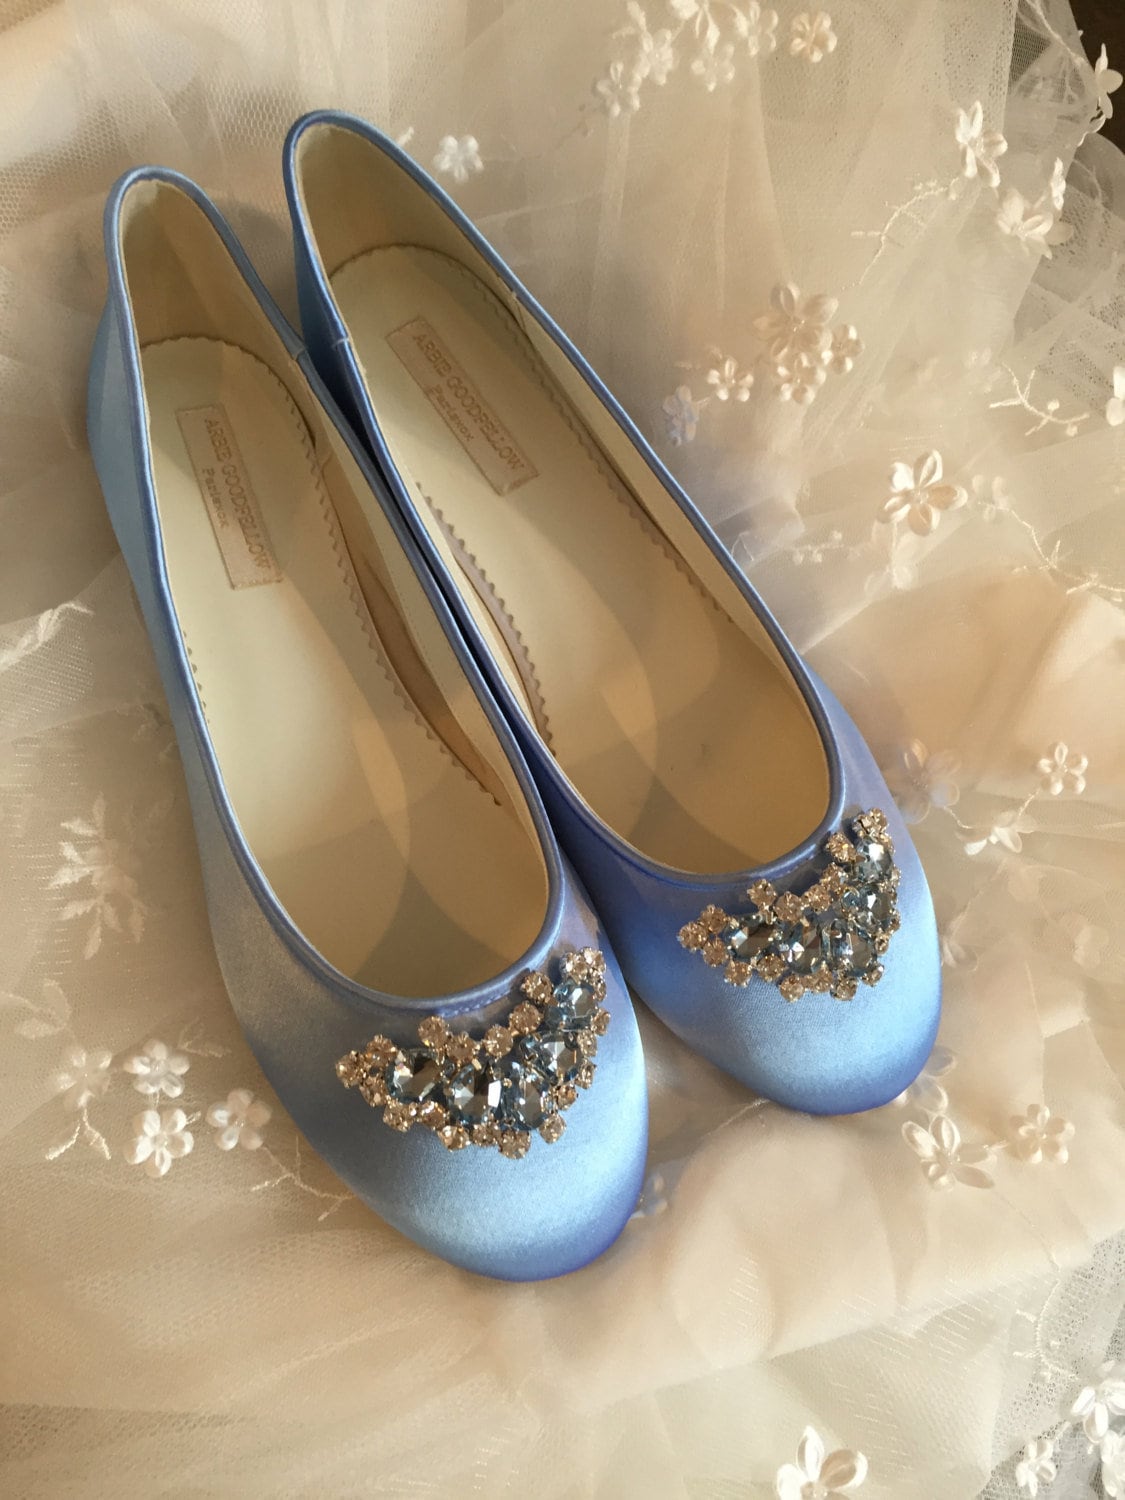 tæppe Isolere ensidigt Cinderella Shoes Wedding Shoes Blue Bridal Shoes Ballet | Etsy